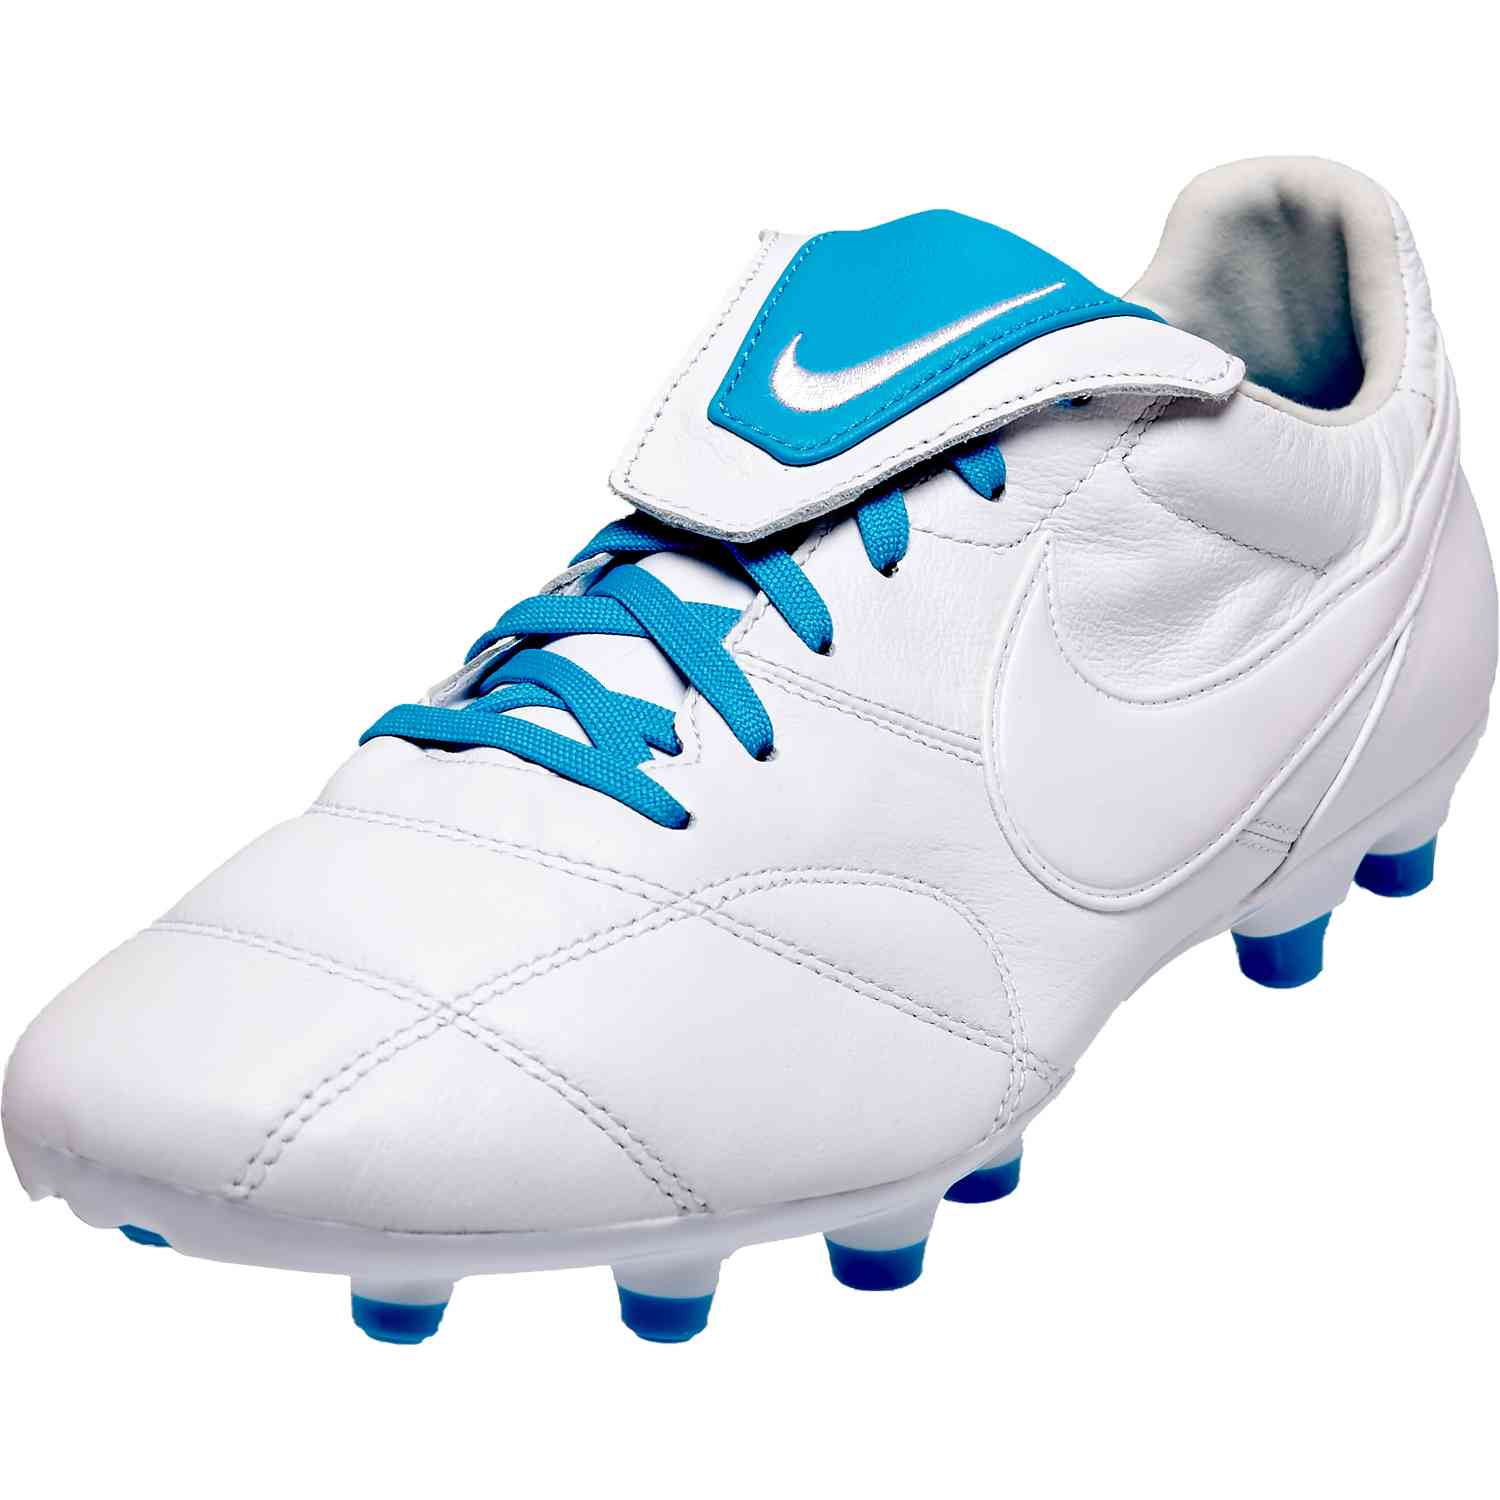 light blue soccer cleats